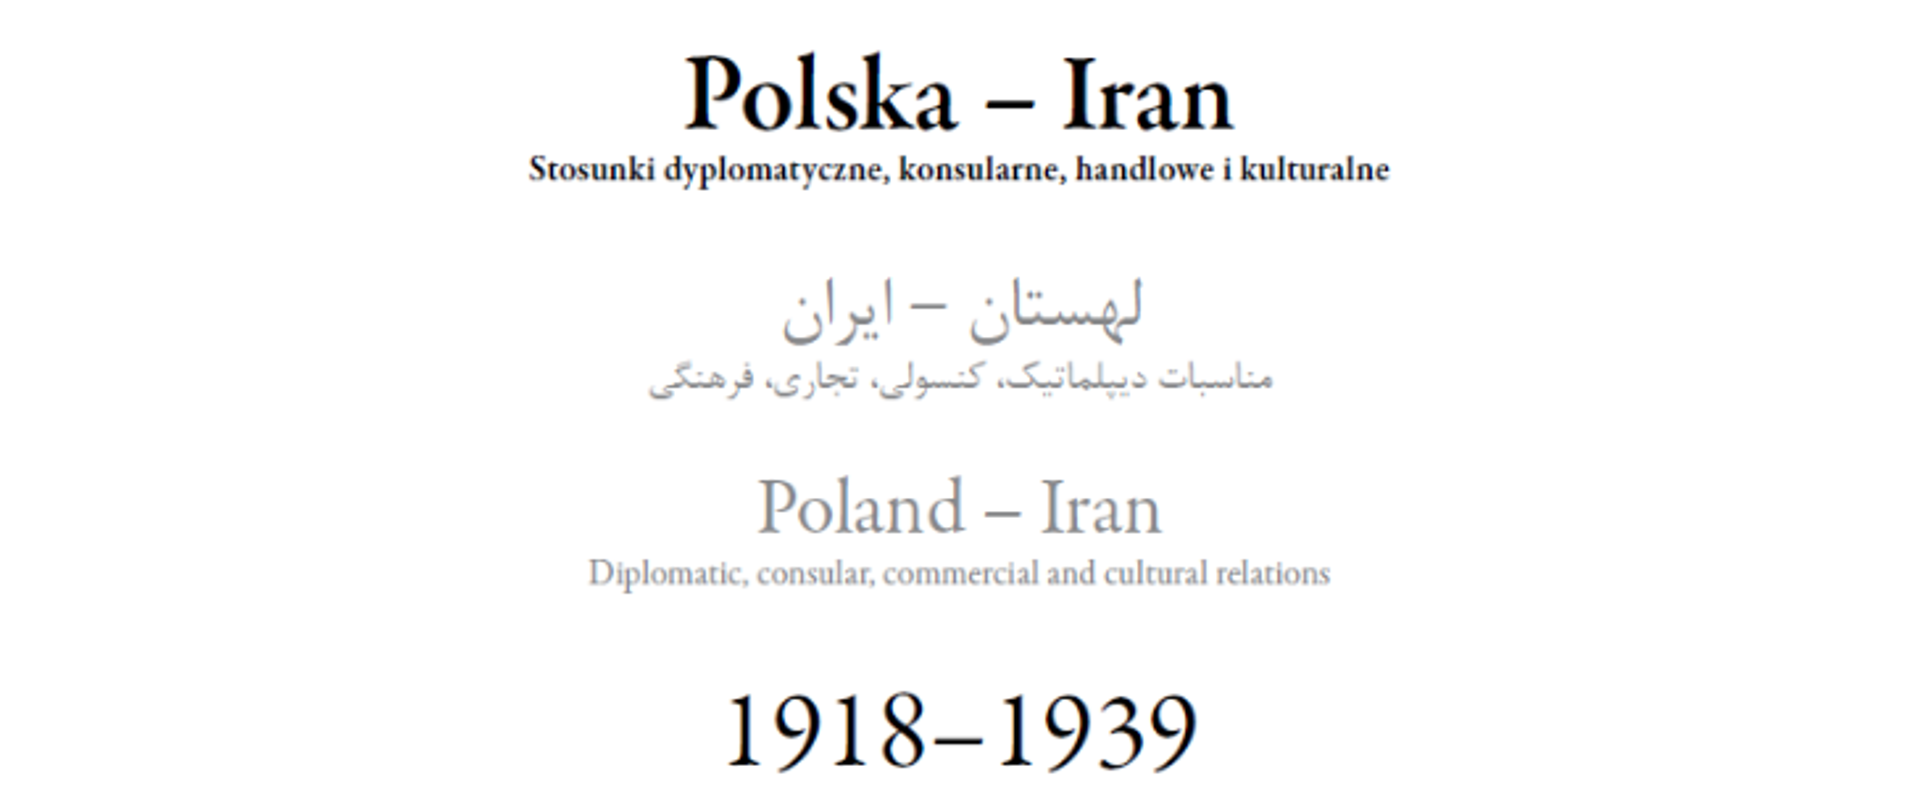 Polska - Iran. Stosunki dyplomatyczne, konsularne, handlowe, kulturalne 1918-1939 